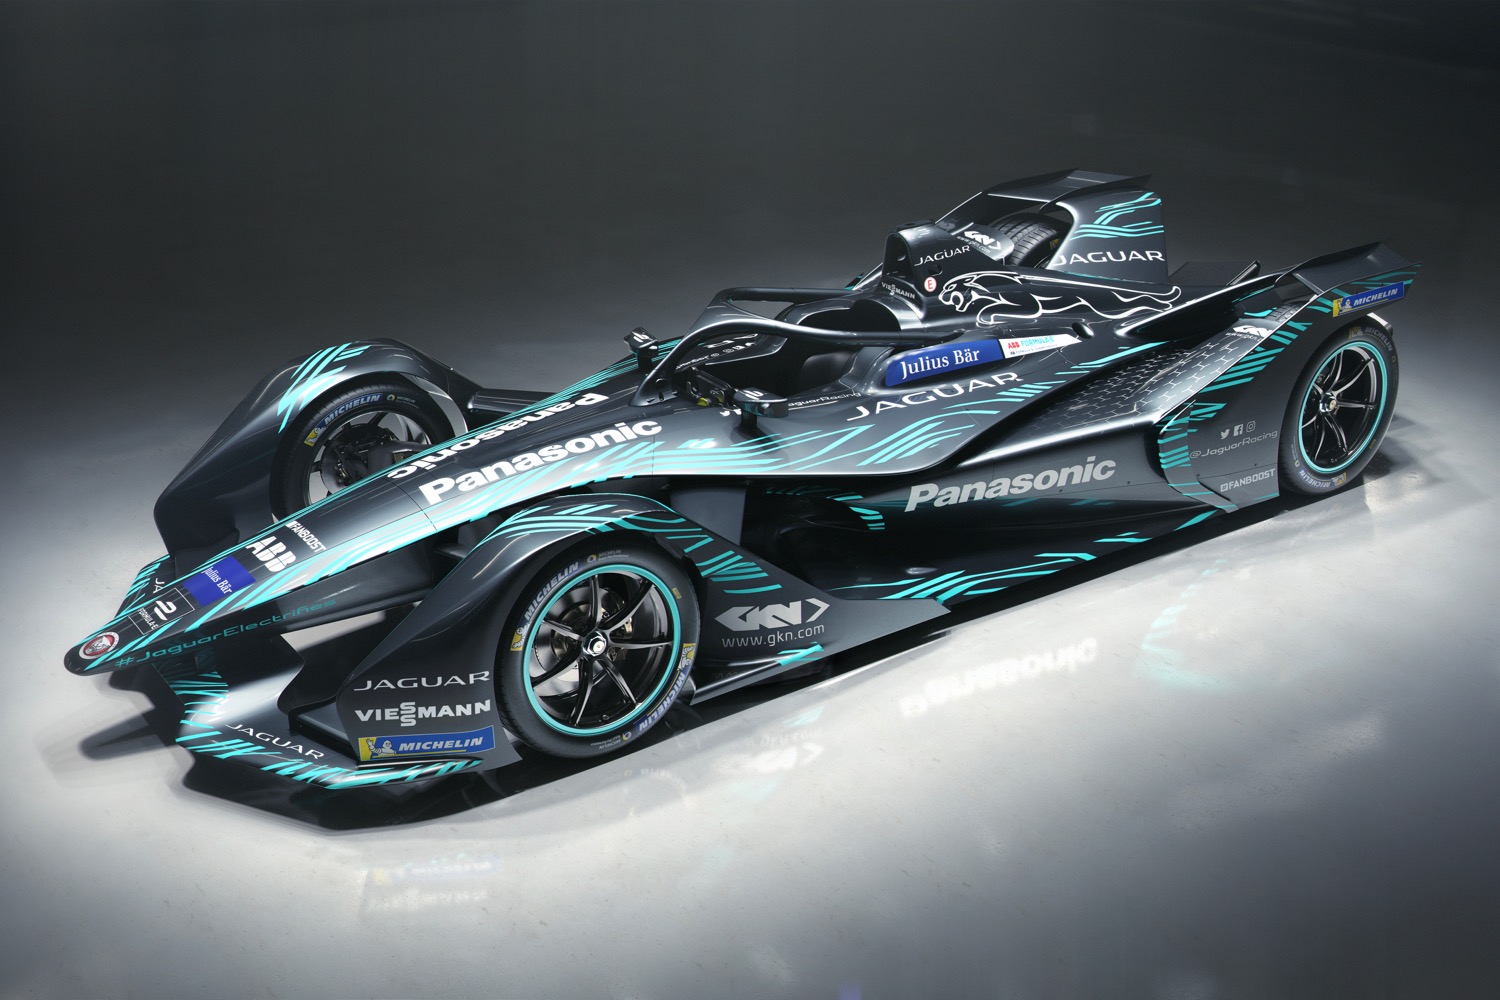 Jaguar I-Type 3 Formula E race car